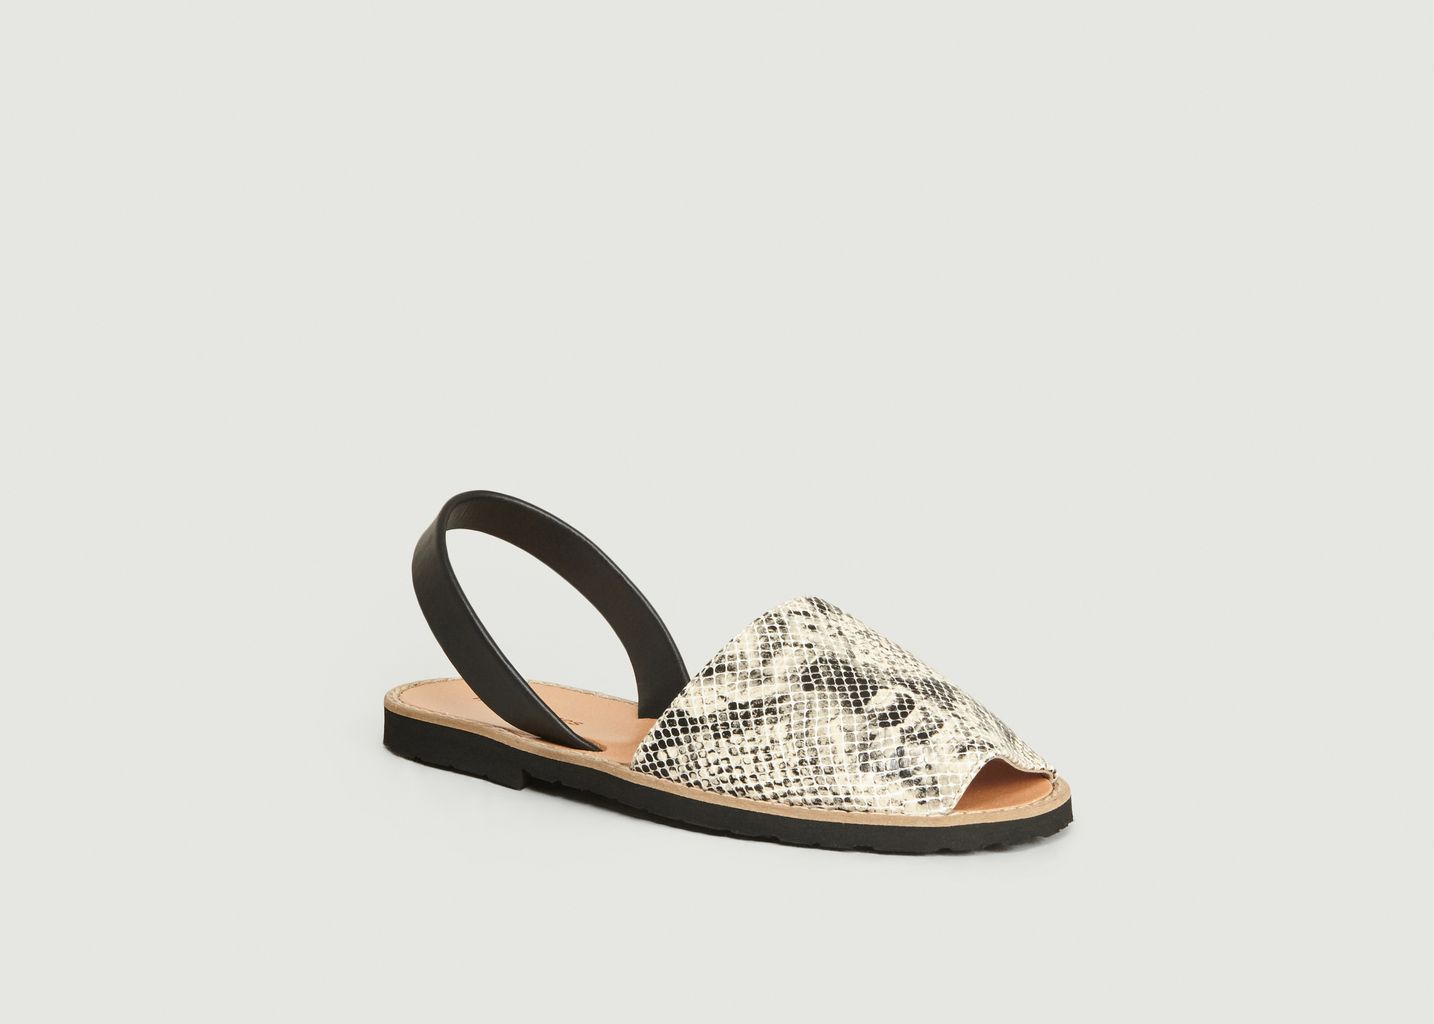 Avarca reptile leather sandals - Minorquines